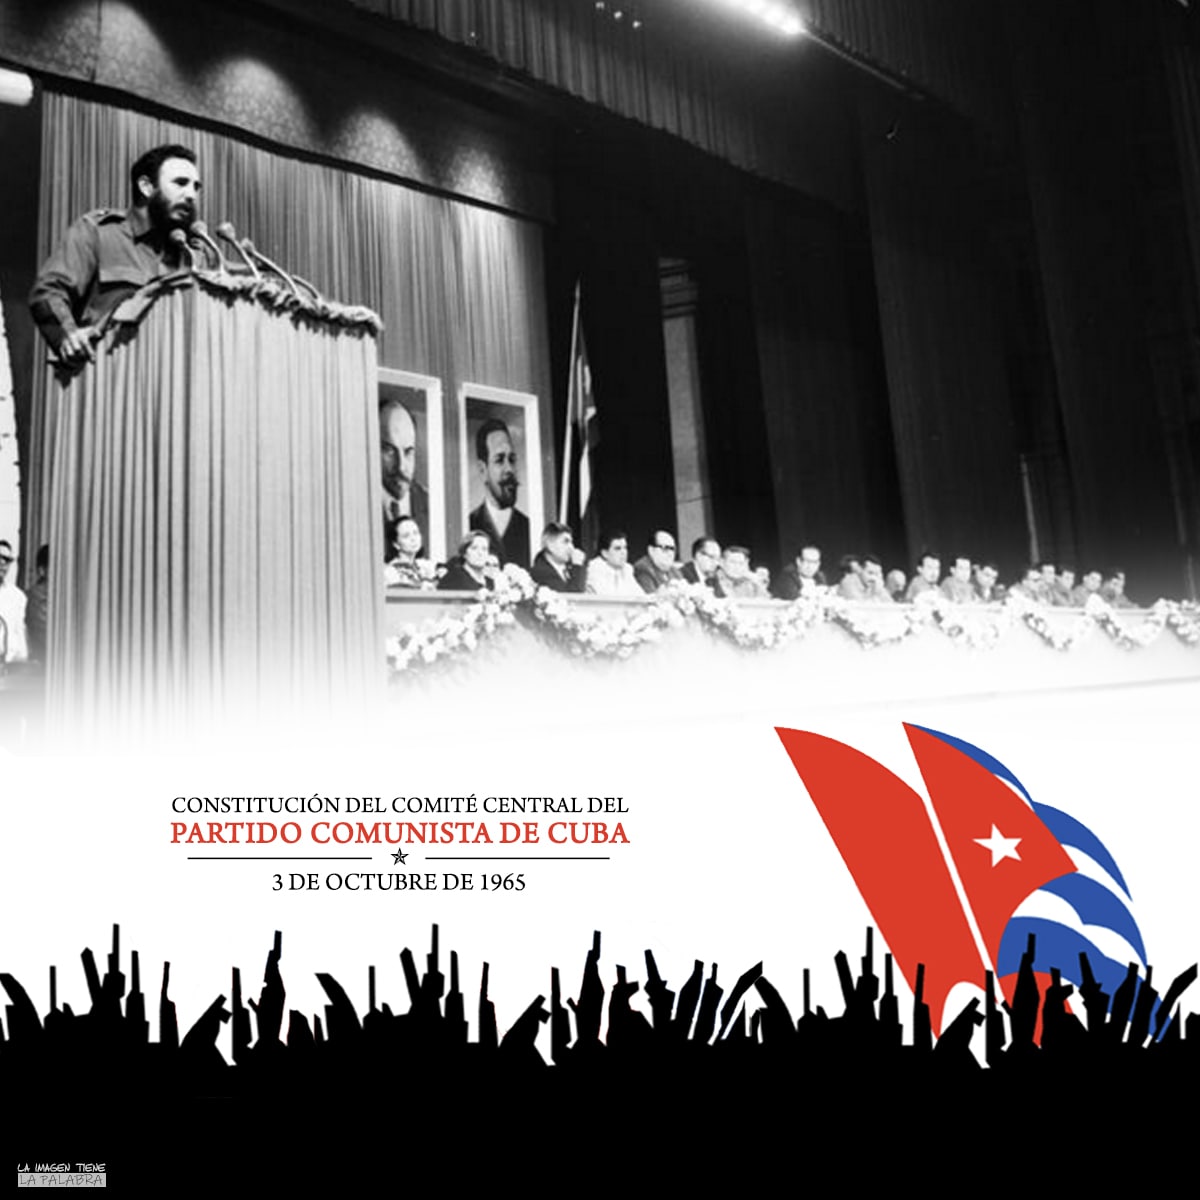 CONSTITUCIÓN DEL COMITÉ CENTRAL DEL PARTIDO, PASO CRUCIAL EN EL RUMBO REVOLUCIONARIO CUBANO.
#FlorenciaVaConTodos #LatirAvileño #YoSigoAMiPredidente